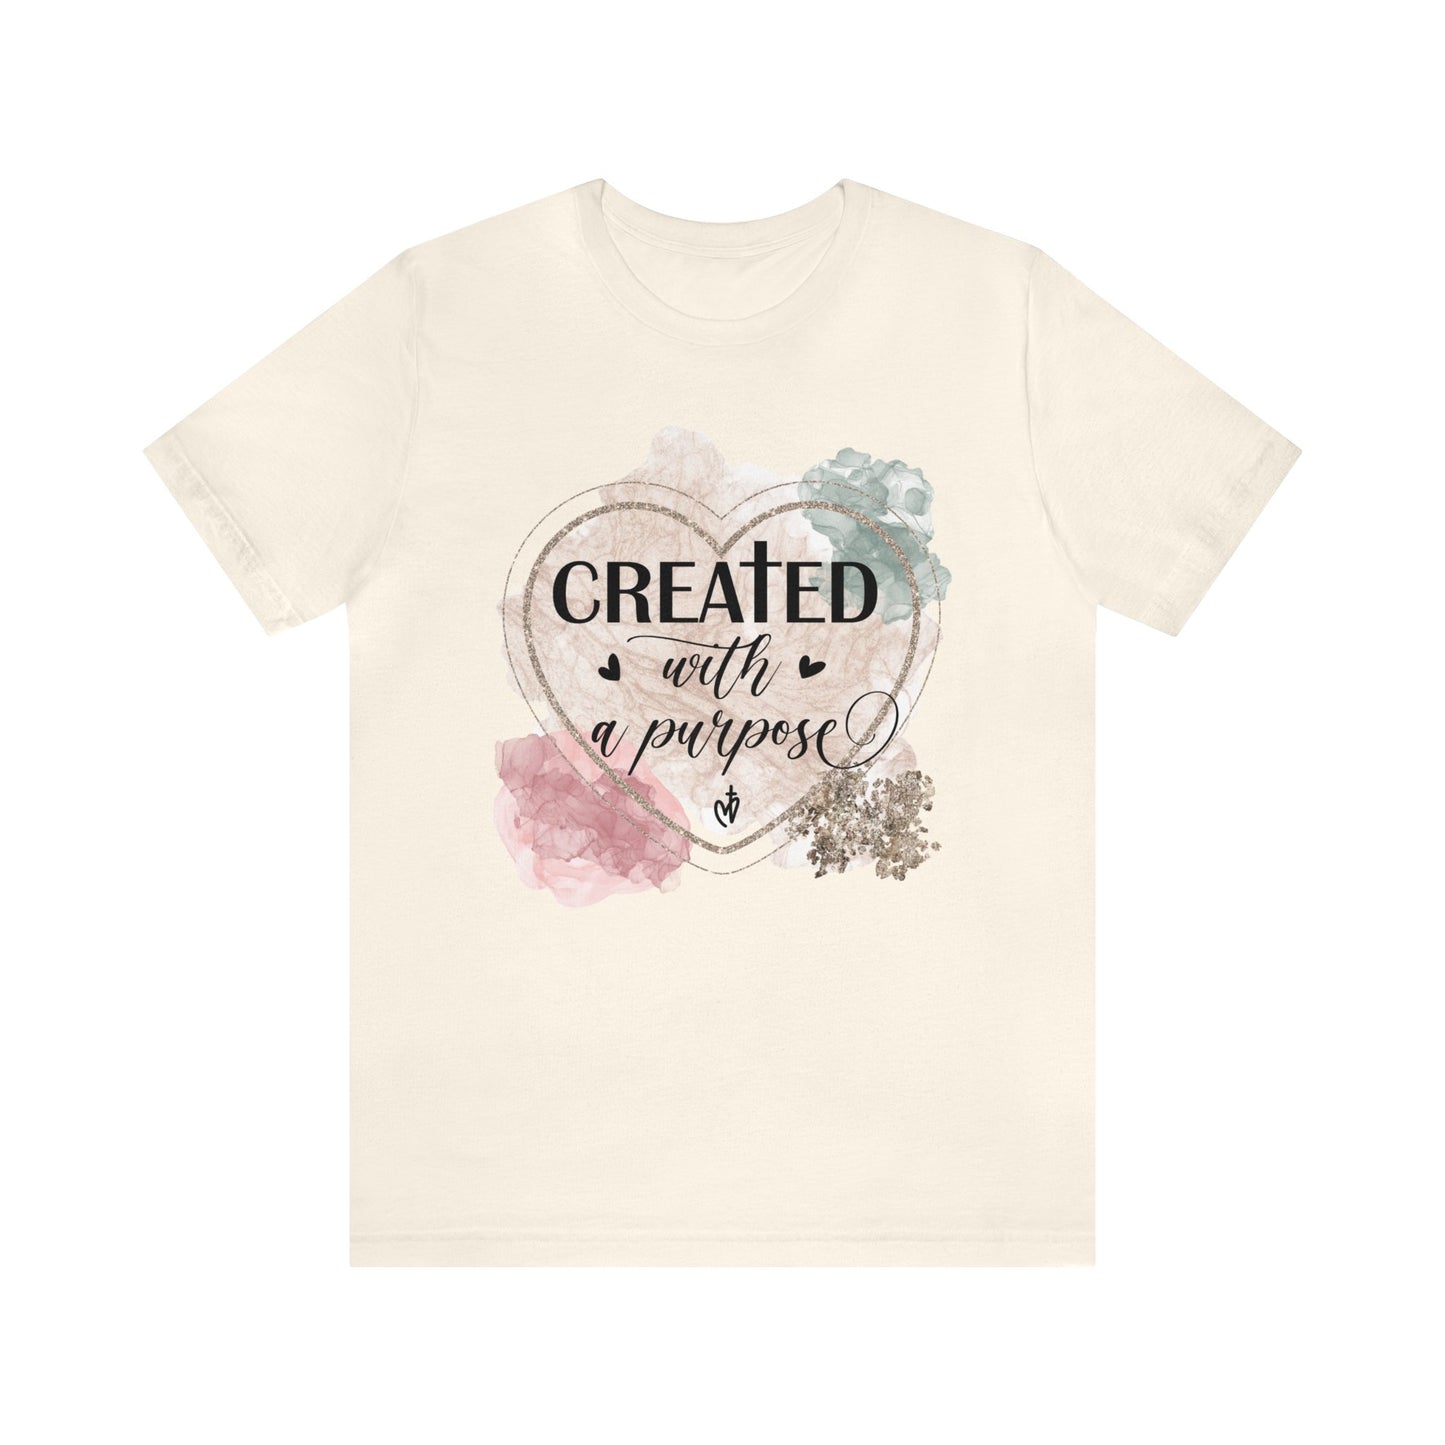 Created With Purpose Shirt, Faith T-Shirt, Religious Tee, Gift for Christian Friend (Faith-55)